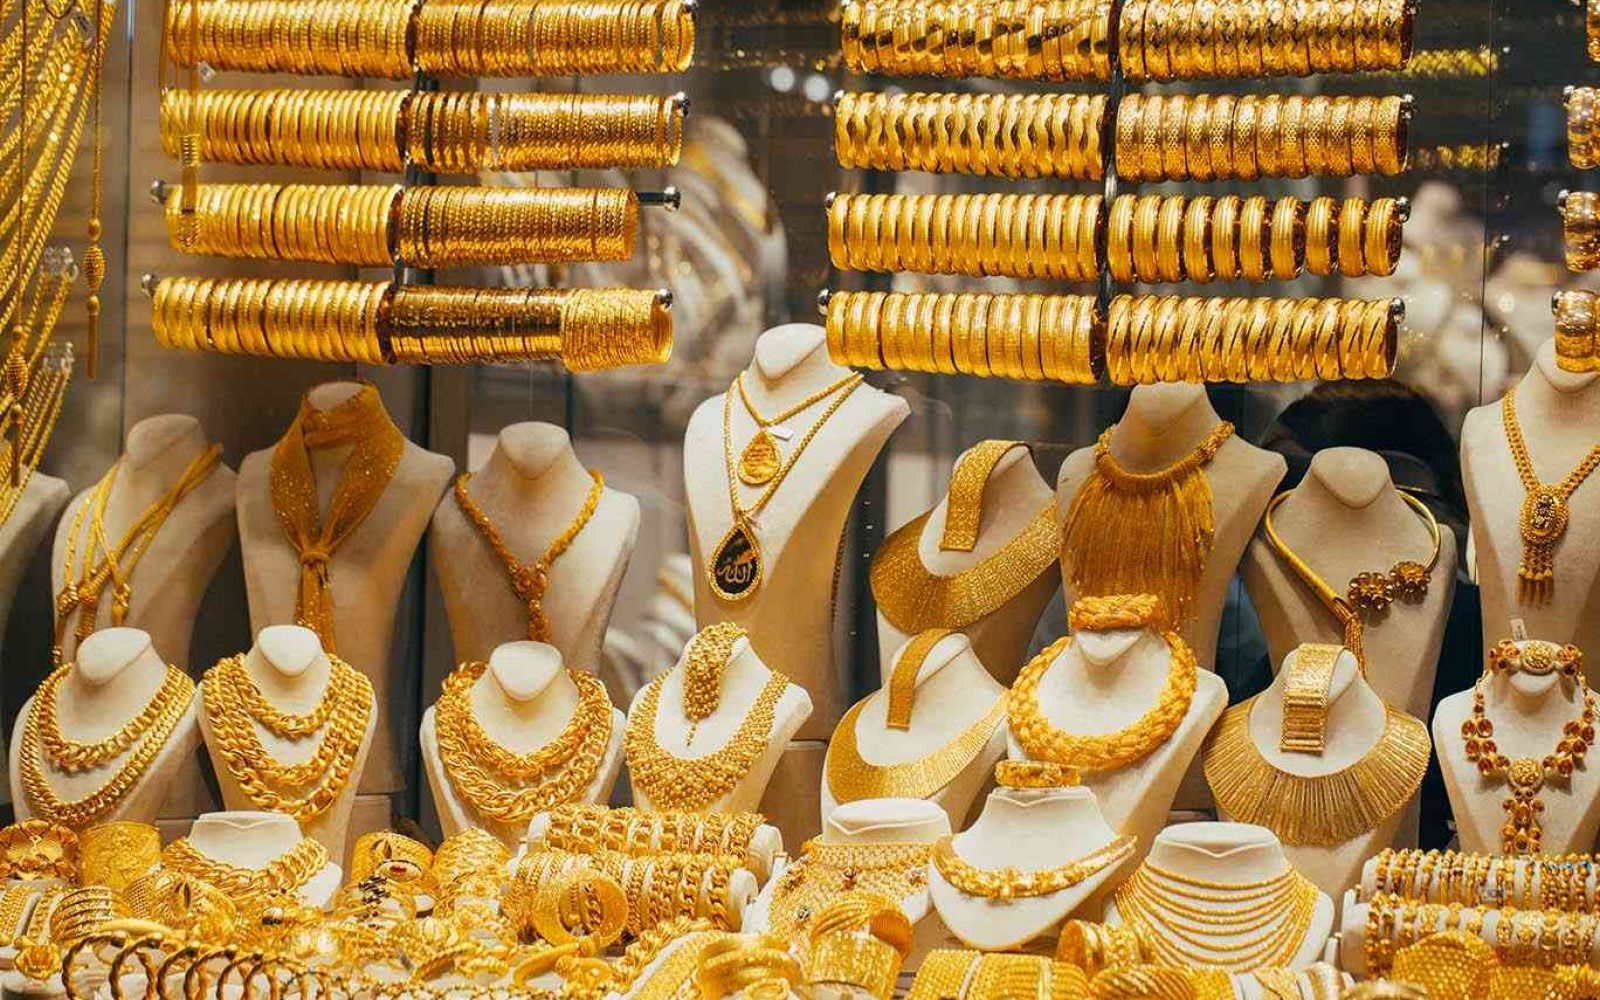 أسعار الذهب اليوم الأربعاء 22/ 9 /2021 في السعودية.. وعيار 21 يسجل 187.15 ريال